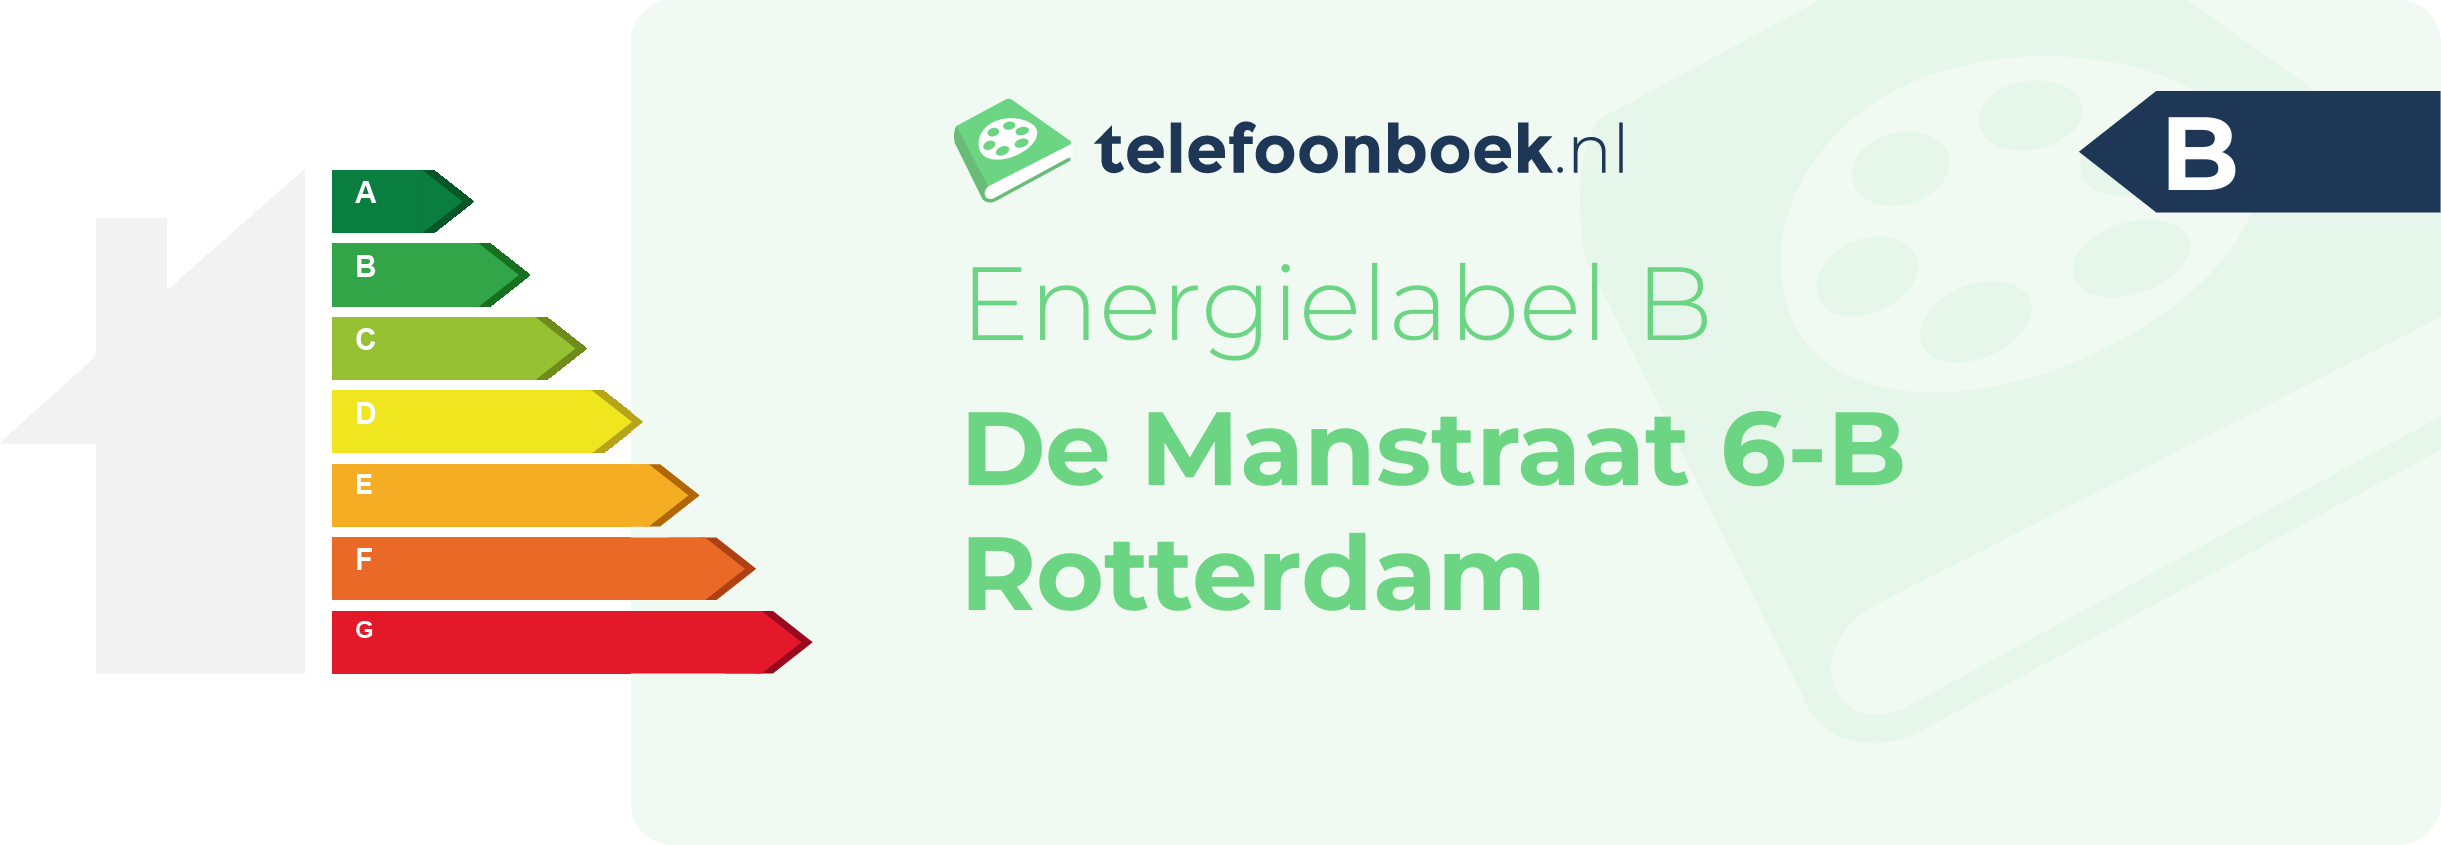 Energielabel De Manstraat 6-B Rotterdam